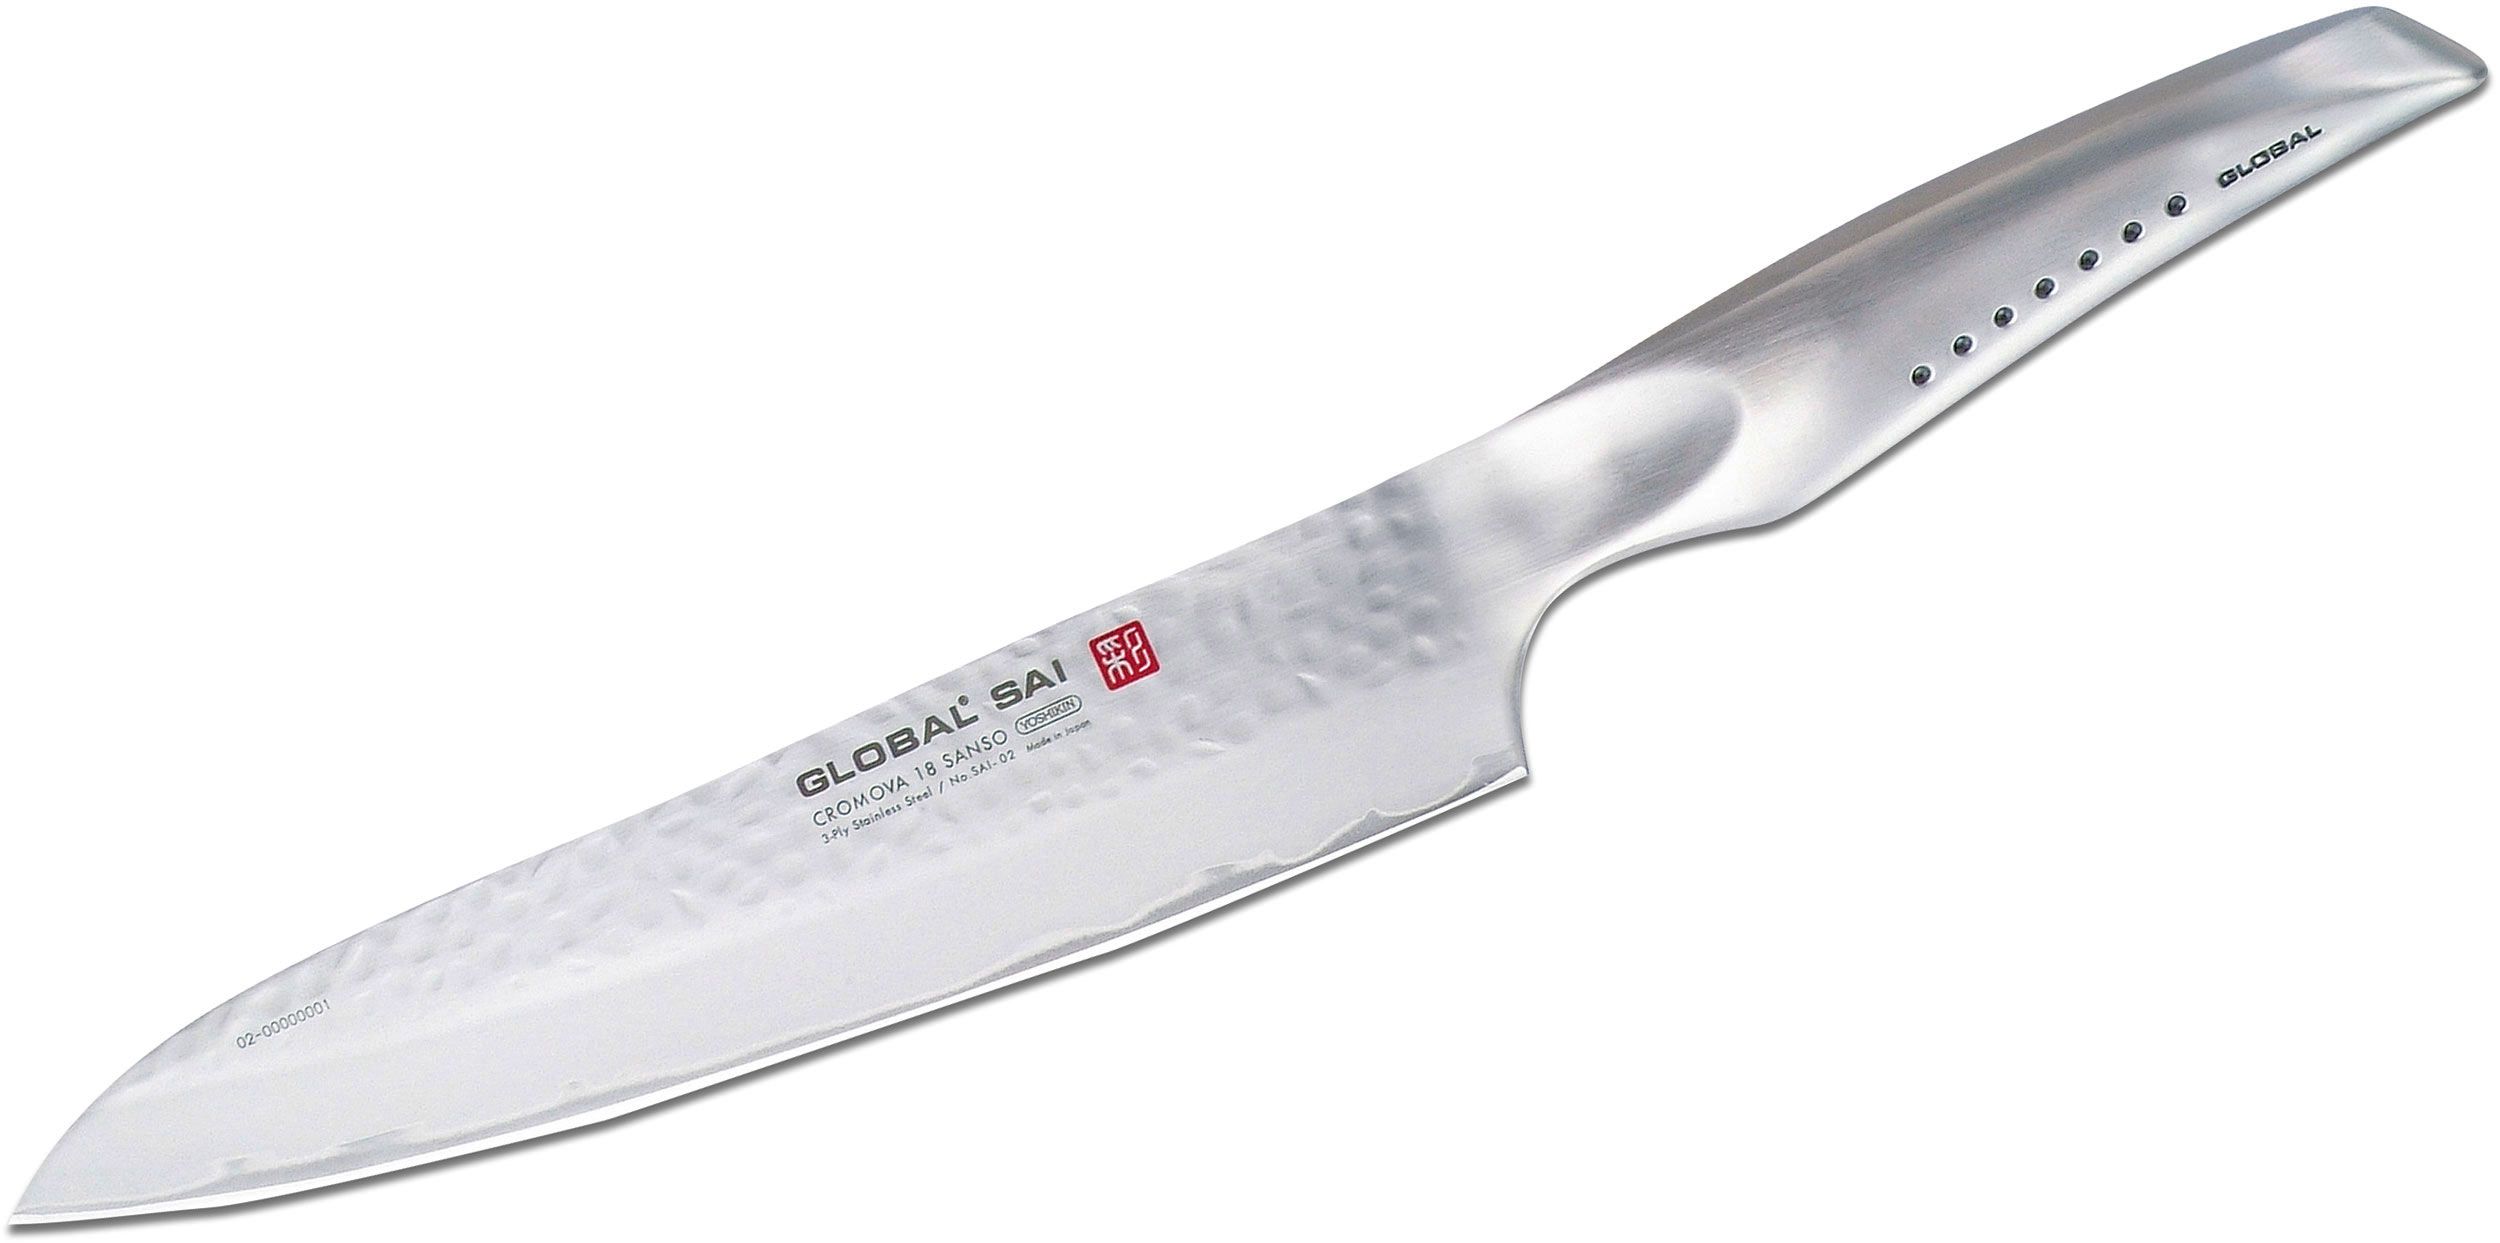 Indkøbscenter strimmel i tilfælde af Global SAI-02 Sai Chef's / Carving Knife 8" Hammered Blade - KnifeCenter